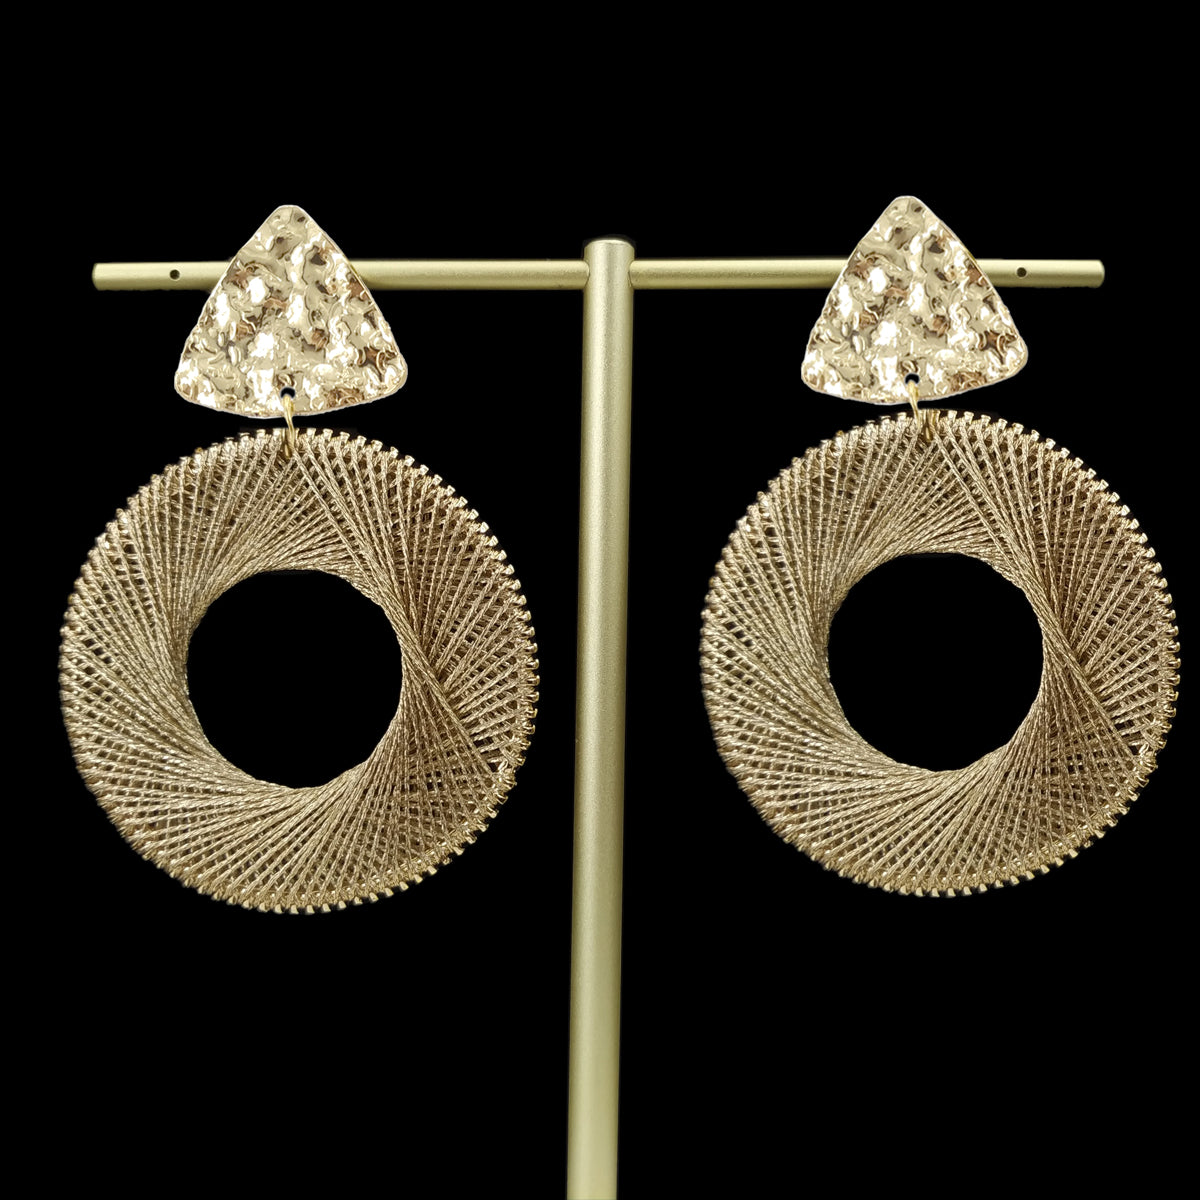 Handmade Knitting Dangle Earrings